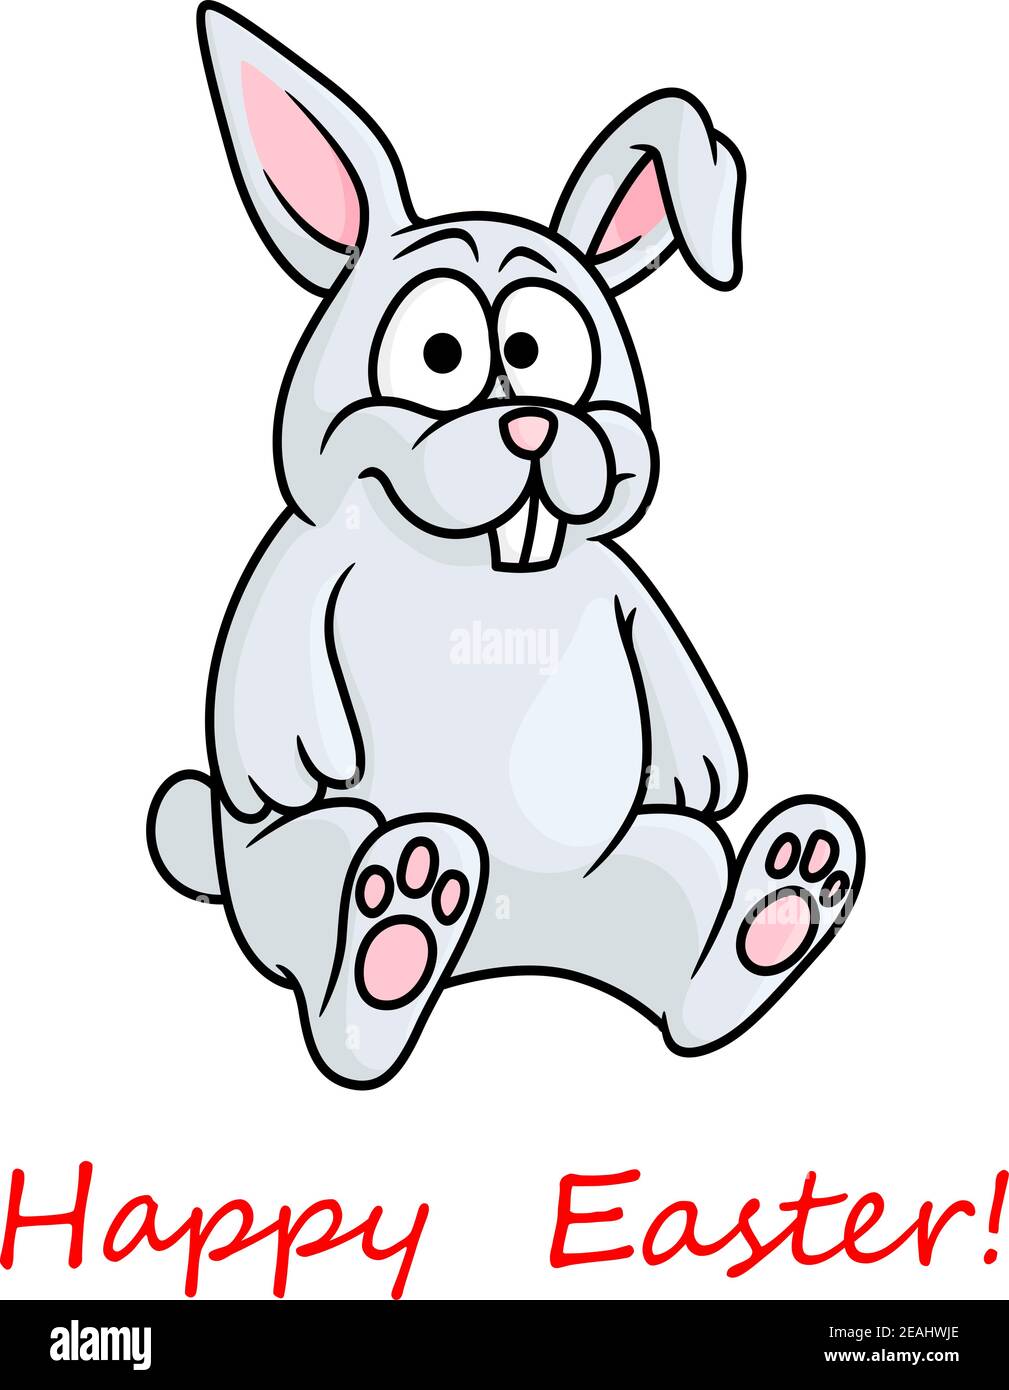 Carino piccolo grigio felice Pasqua coniglietto biglietto di auguri design con un piccolo coniglio seduta guardando lo spettatore sopra rosso felice Pasqua testo, vettore illust Illustrazione Vettoriale